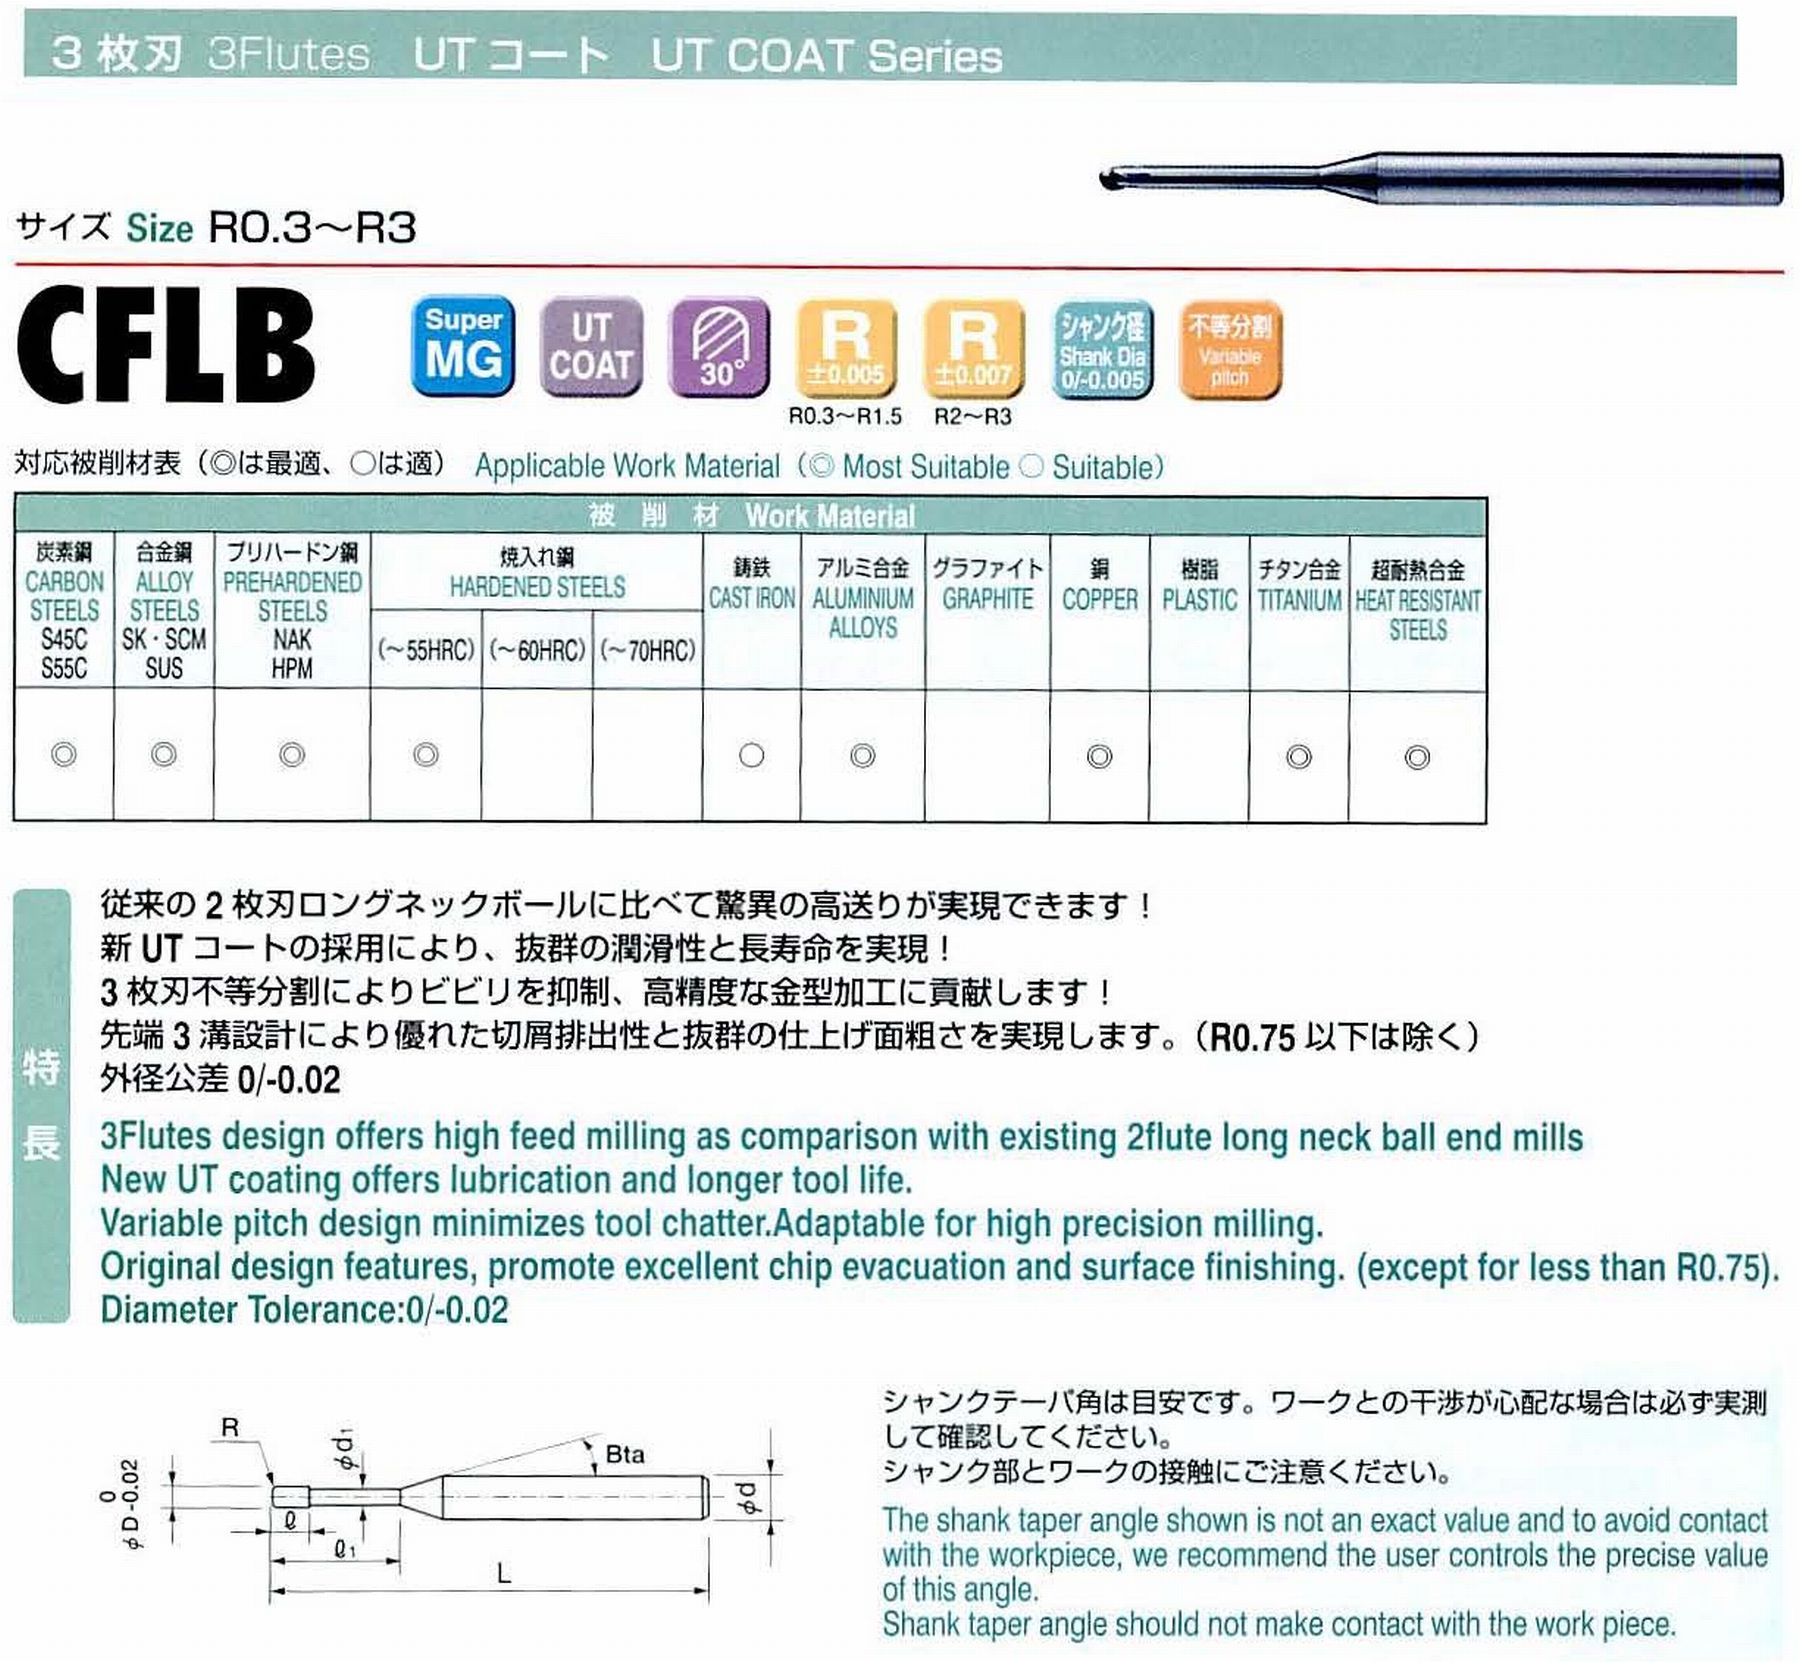 ユニオンツール 3枚刃 CFLB3060-300 ボール半径R3 有効長30 刃長4.8 首径5.42 シャンクテーパ角- 全長80 シャンク径6